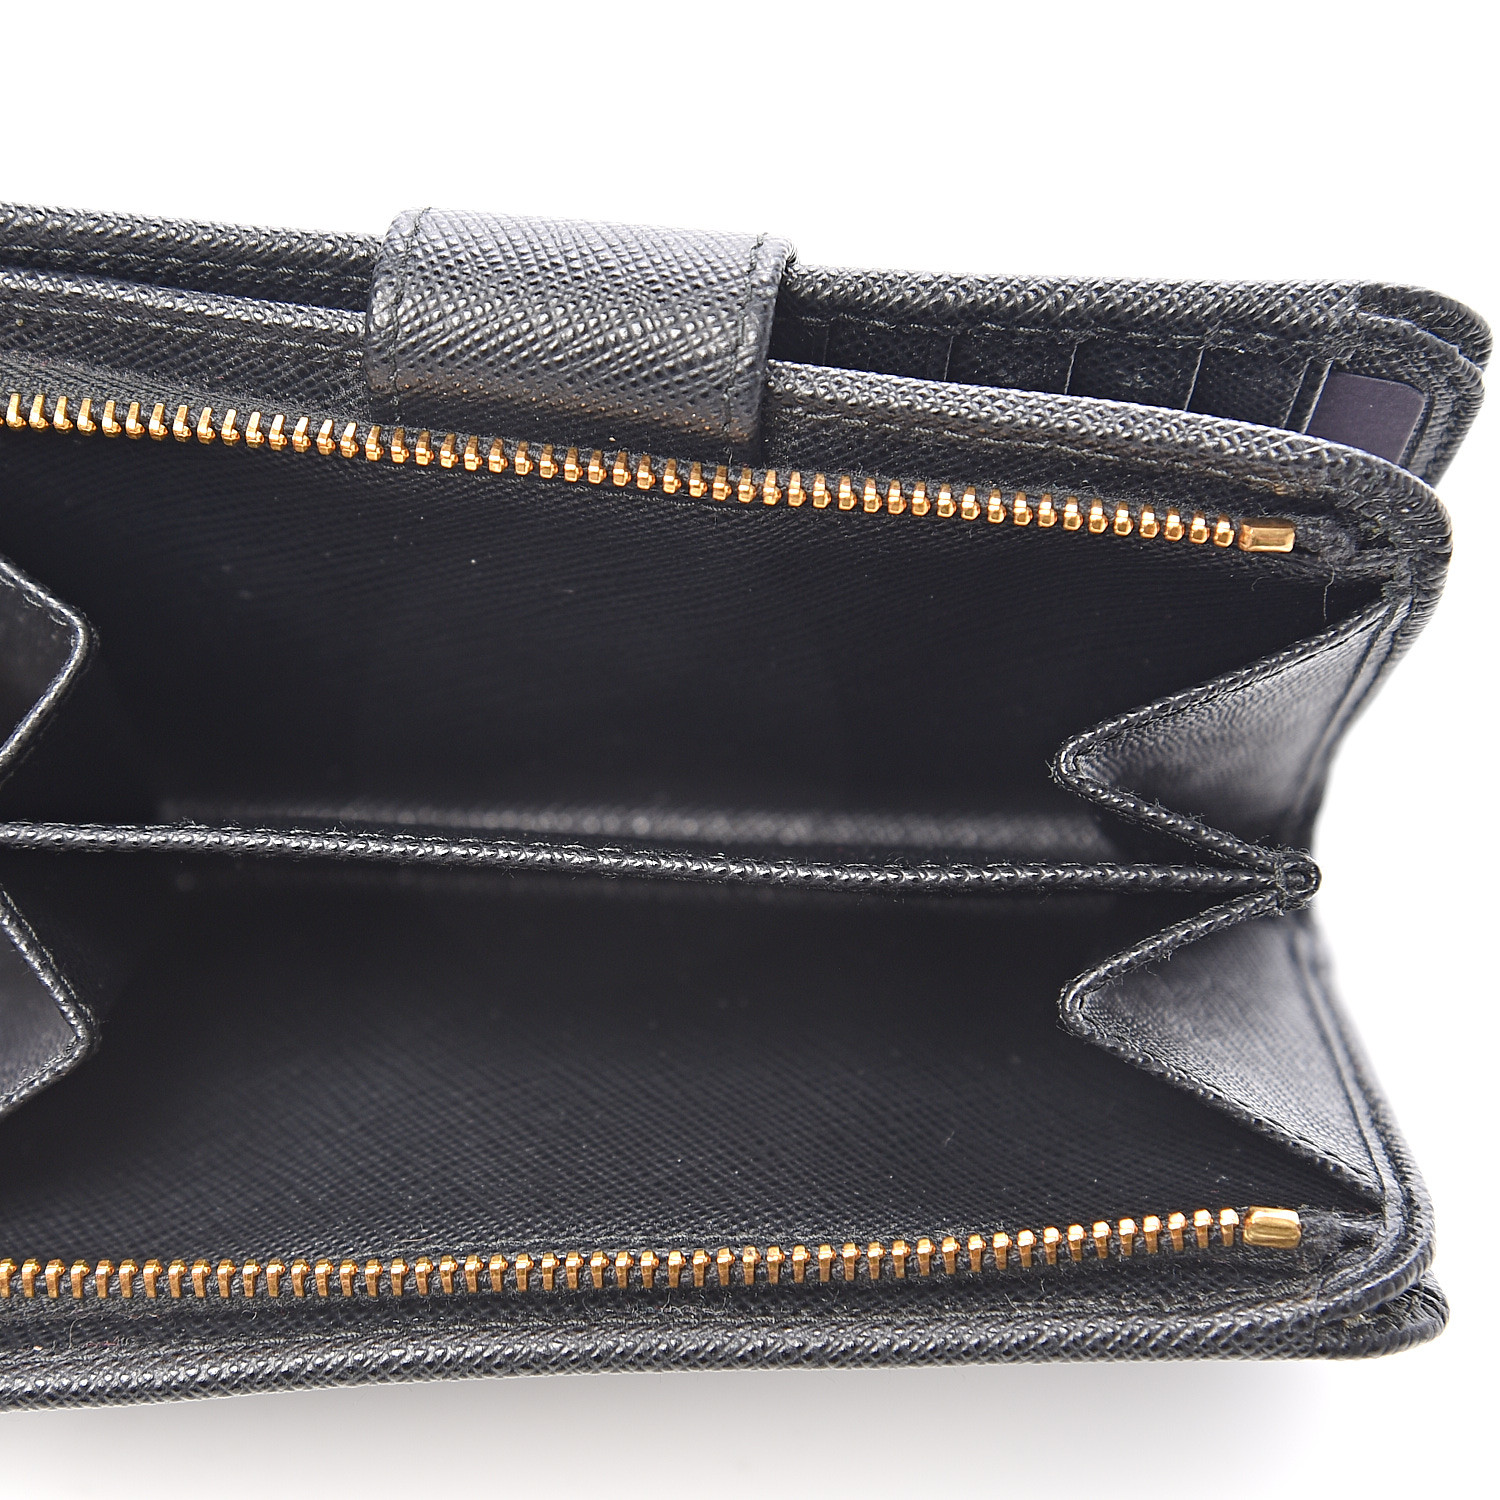 PRADA Saffiano Metal Compact Wallet Black 544792